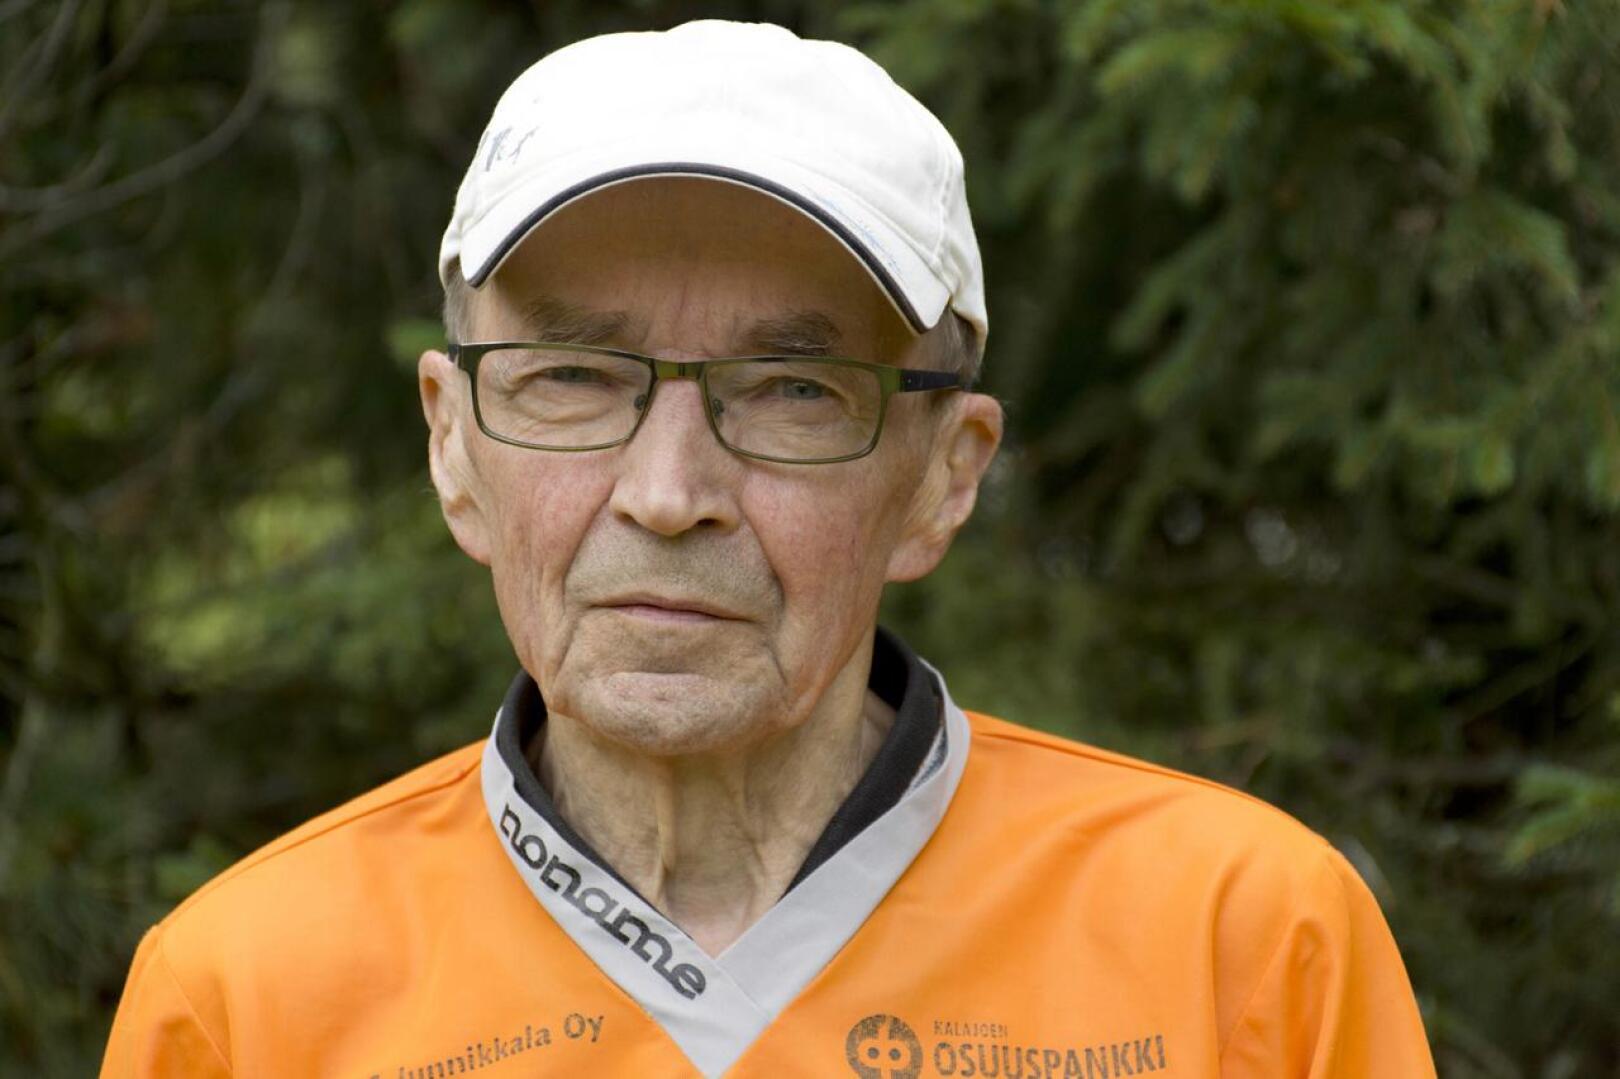 Yli 80-vuotias Kalevi Puusaari kiertää yhä kisoja aktiivisesti.